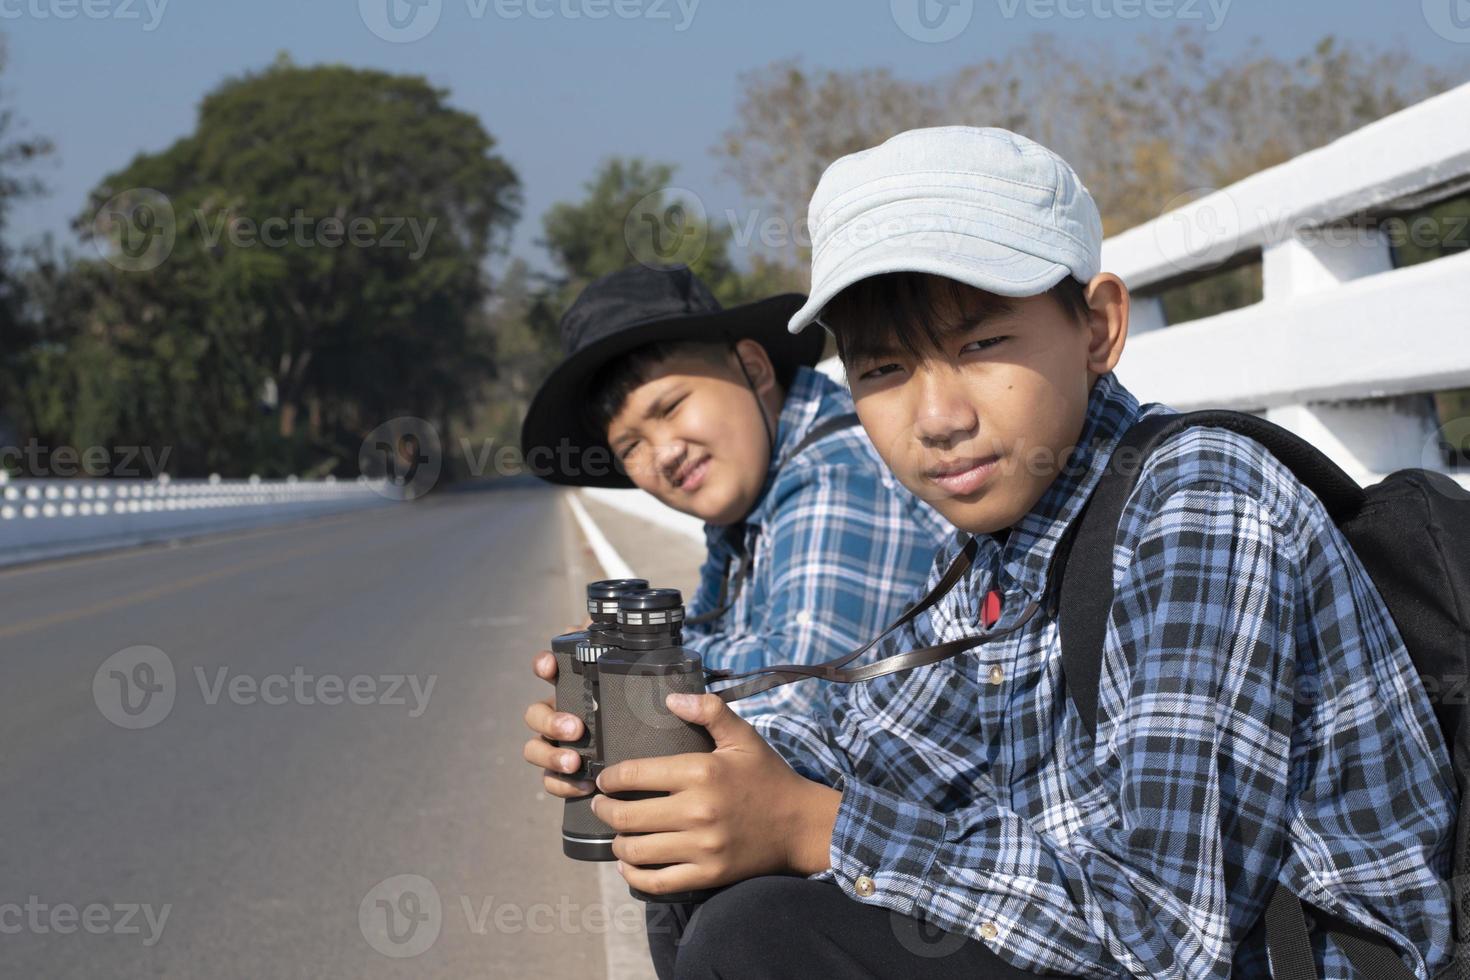 asiatische Jungs benutzen Ferngläser, um während des Sommercamps Vögel im tropischen Wald zu beobachten, eine Idee, um Kreaturen und wild lebende Tiere und Insekten außerhalb des Klassenzimmers zu lernen. foto